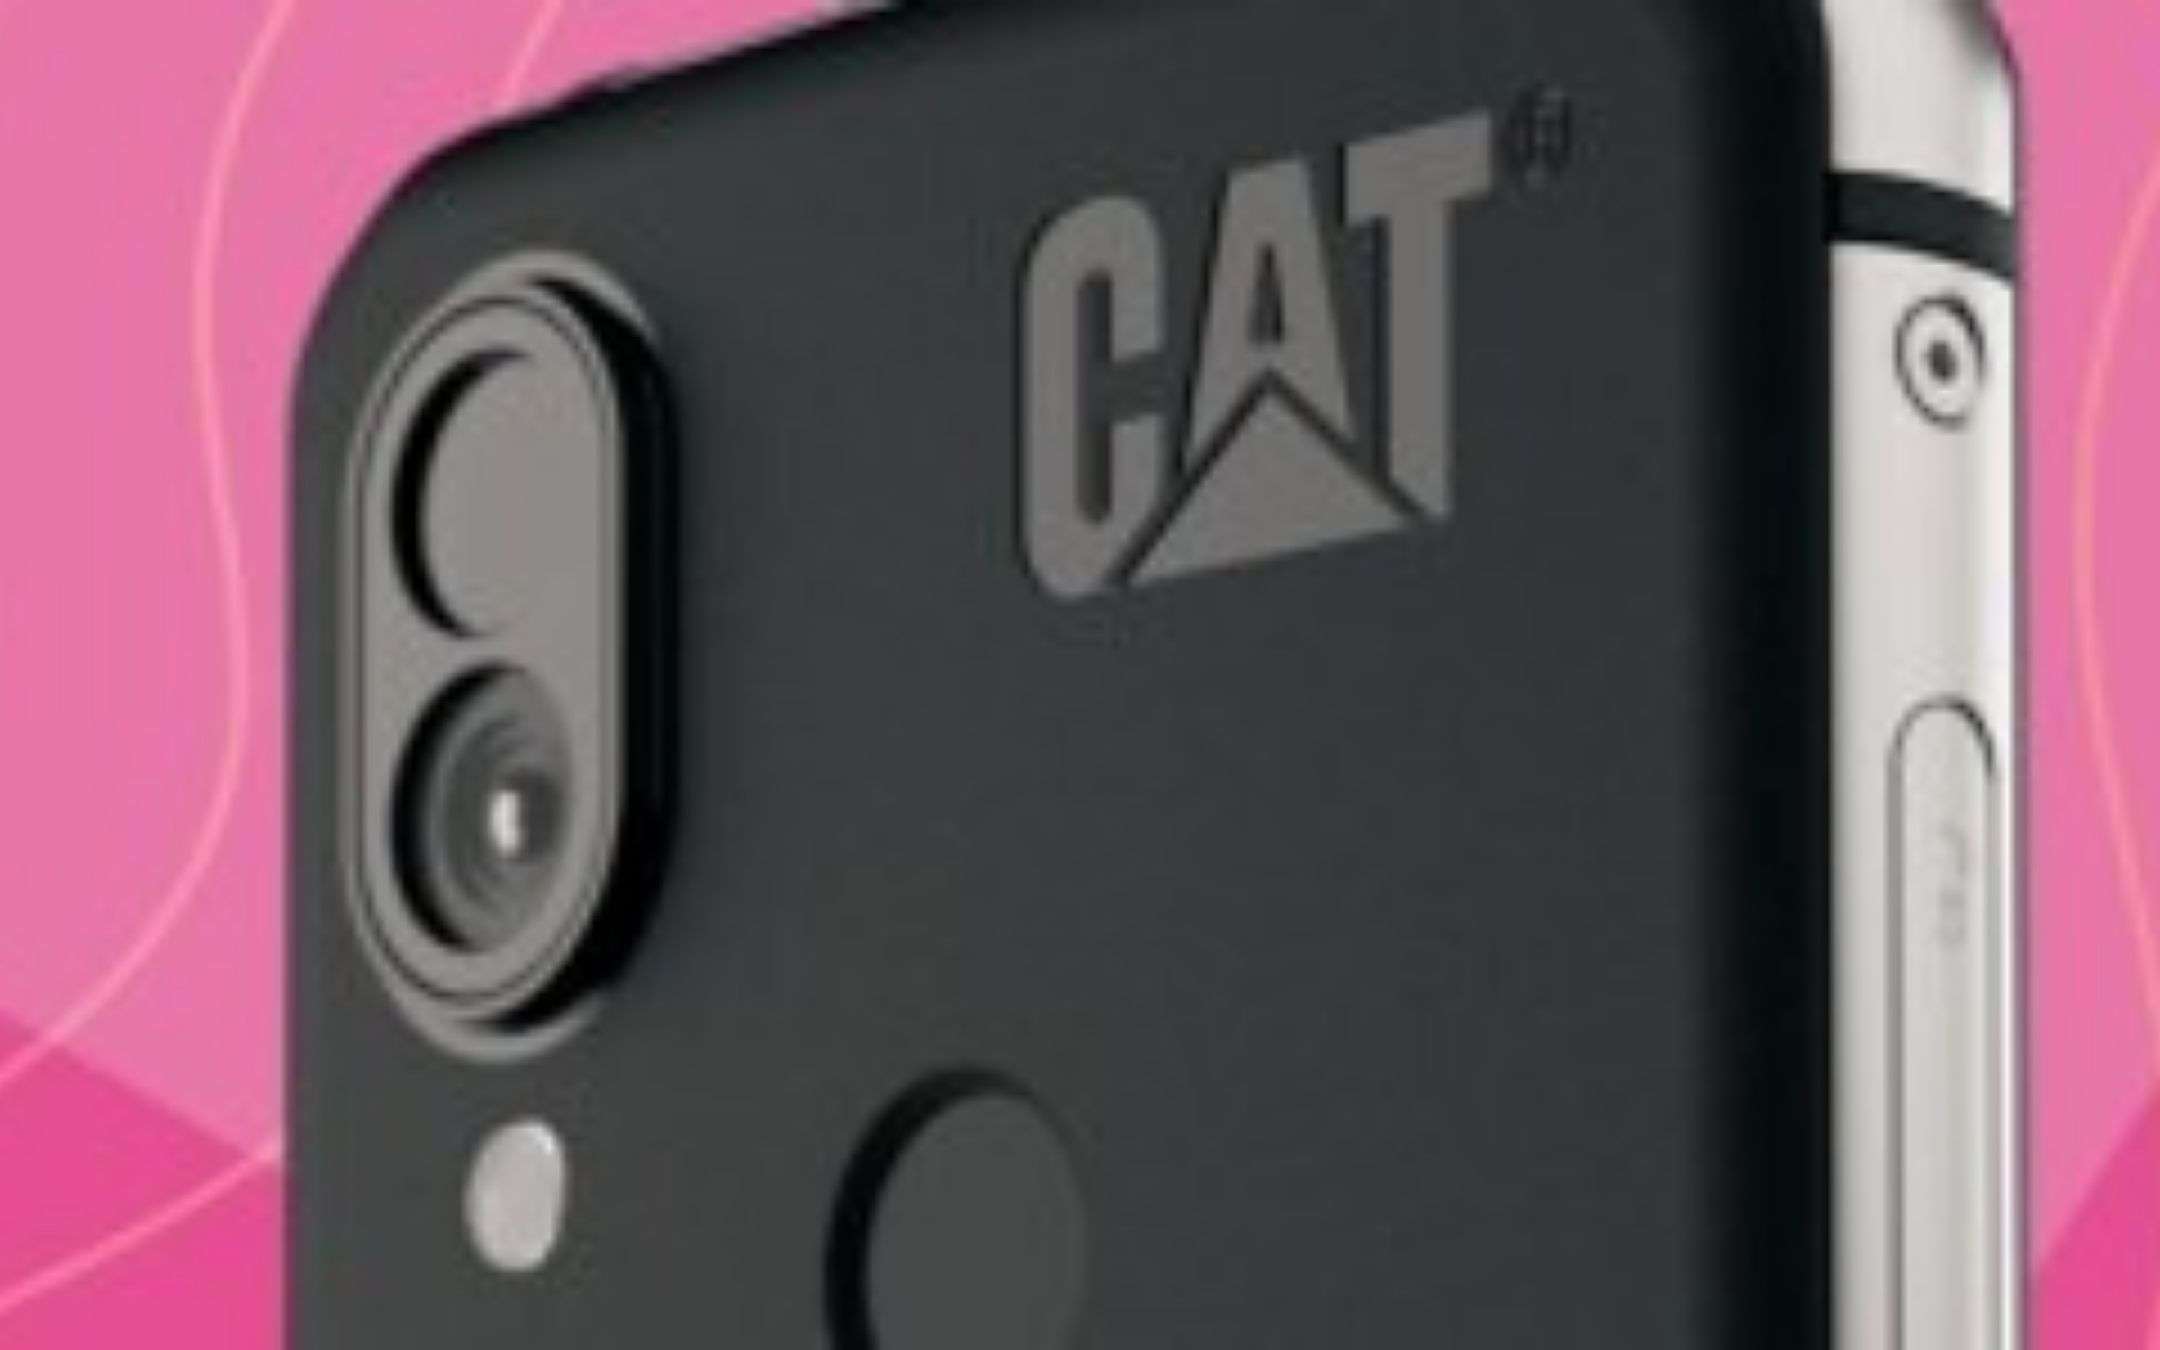 Cat S62 Pro con termocamera aggiornata: il teaser